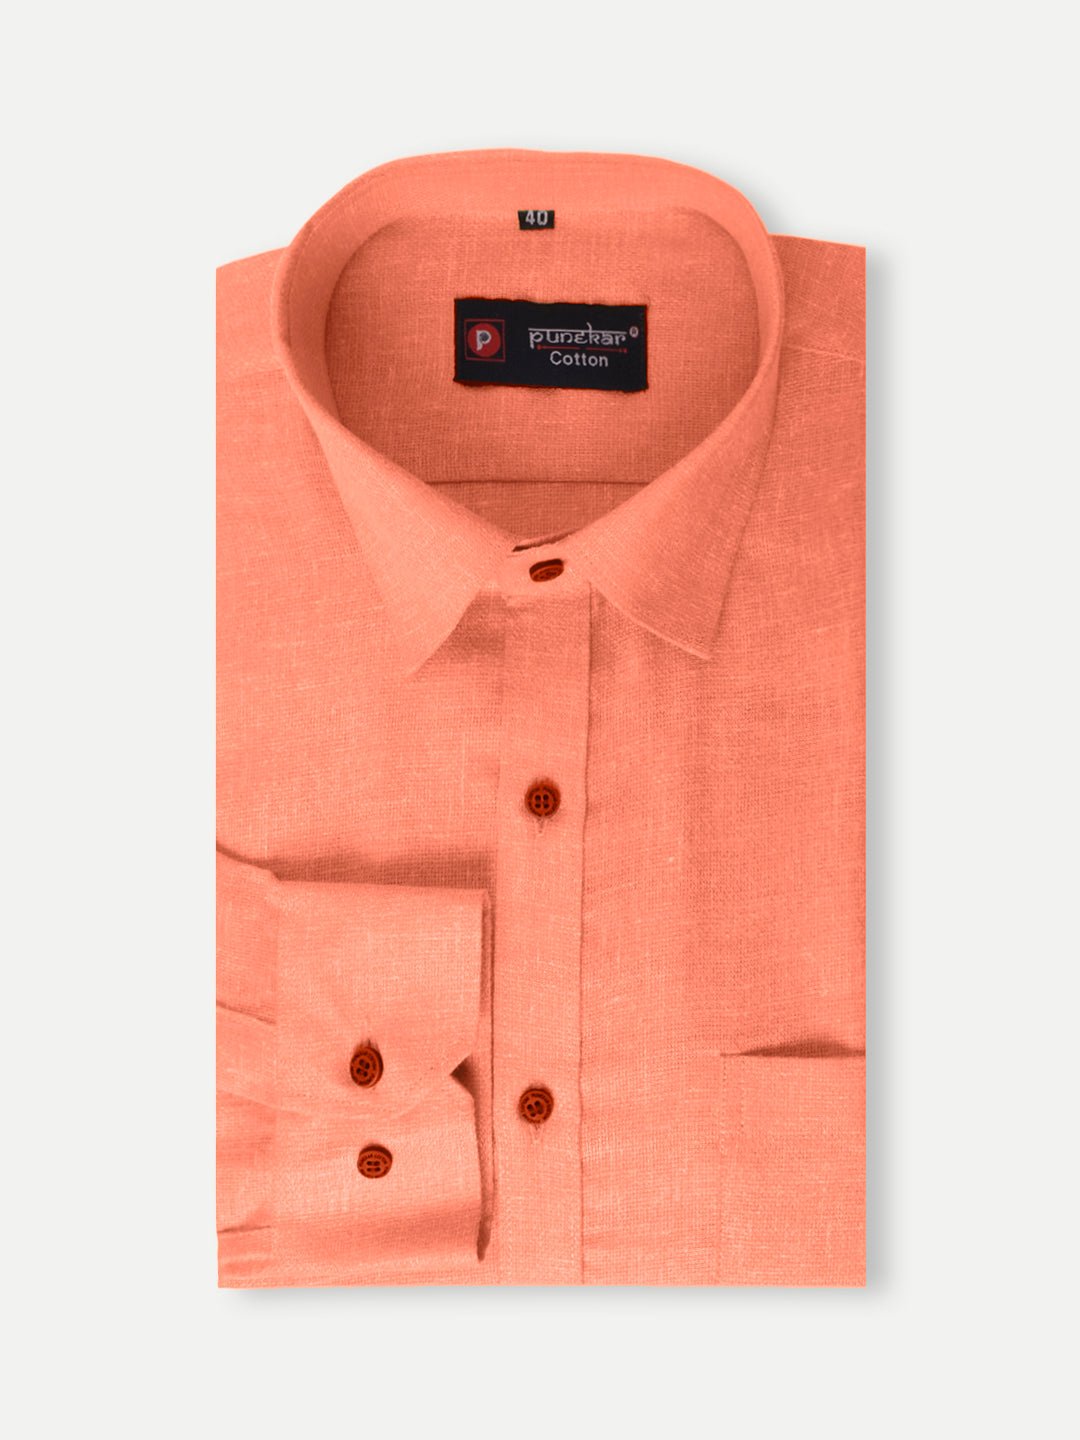 Punekar Cotton Light Orange Color Cotton Linen Formal Shirt for Men's. - Punekar Cotton